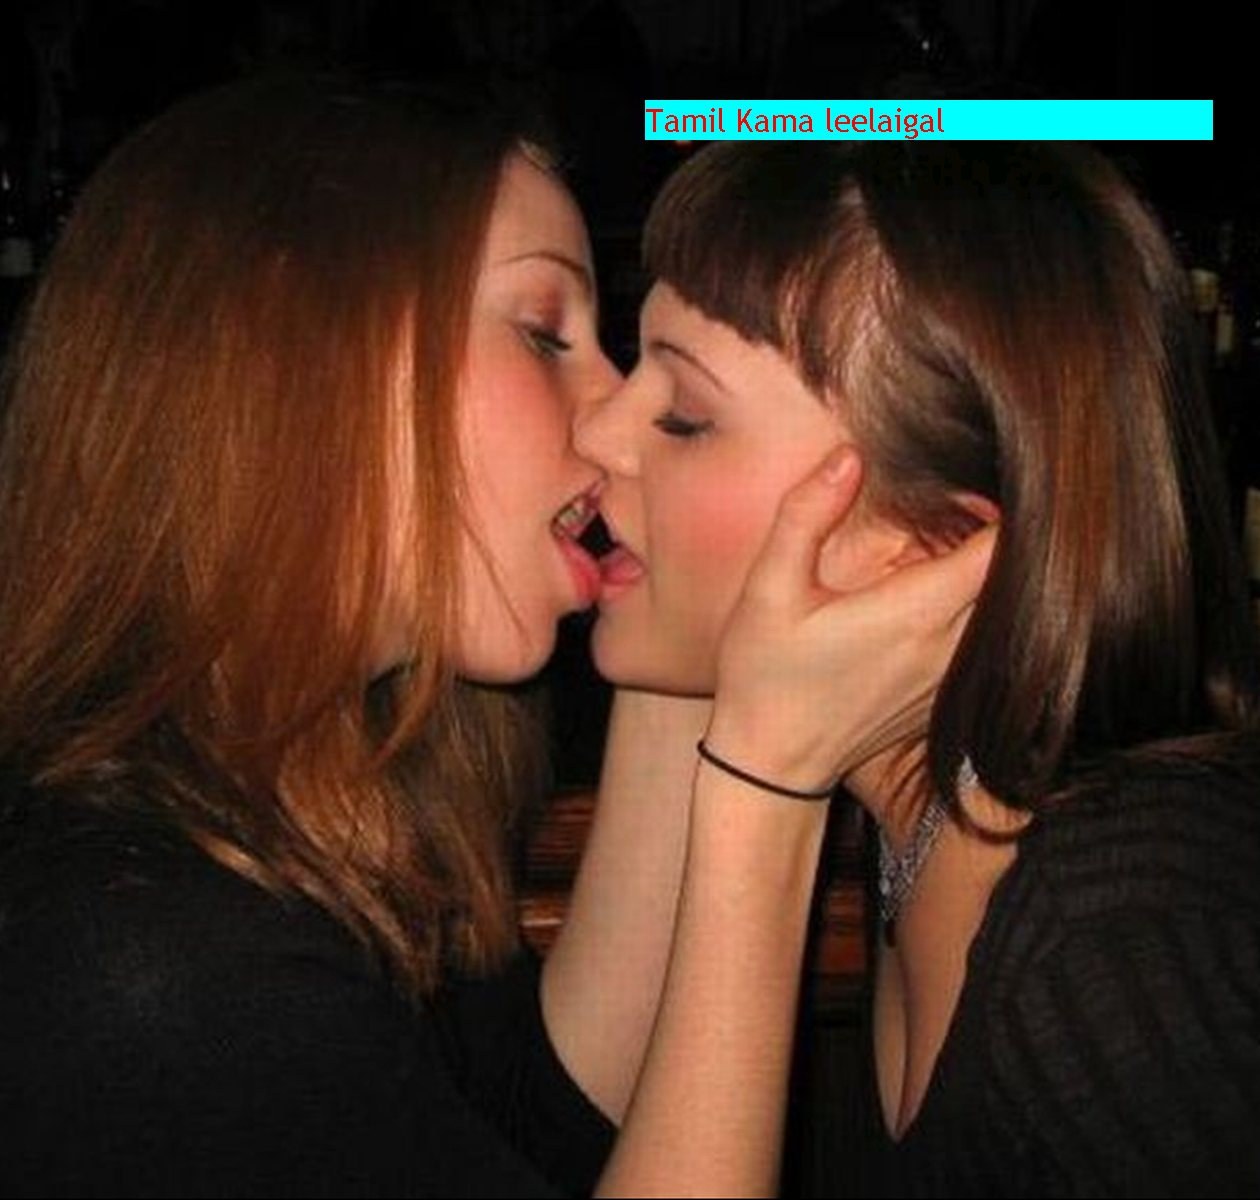 если девушка поцеловалась с девушкой это считается изменой фото 91